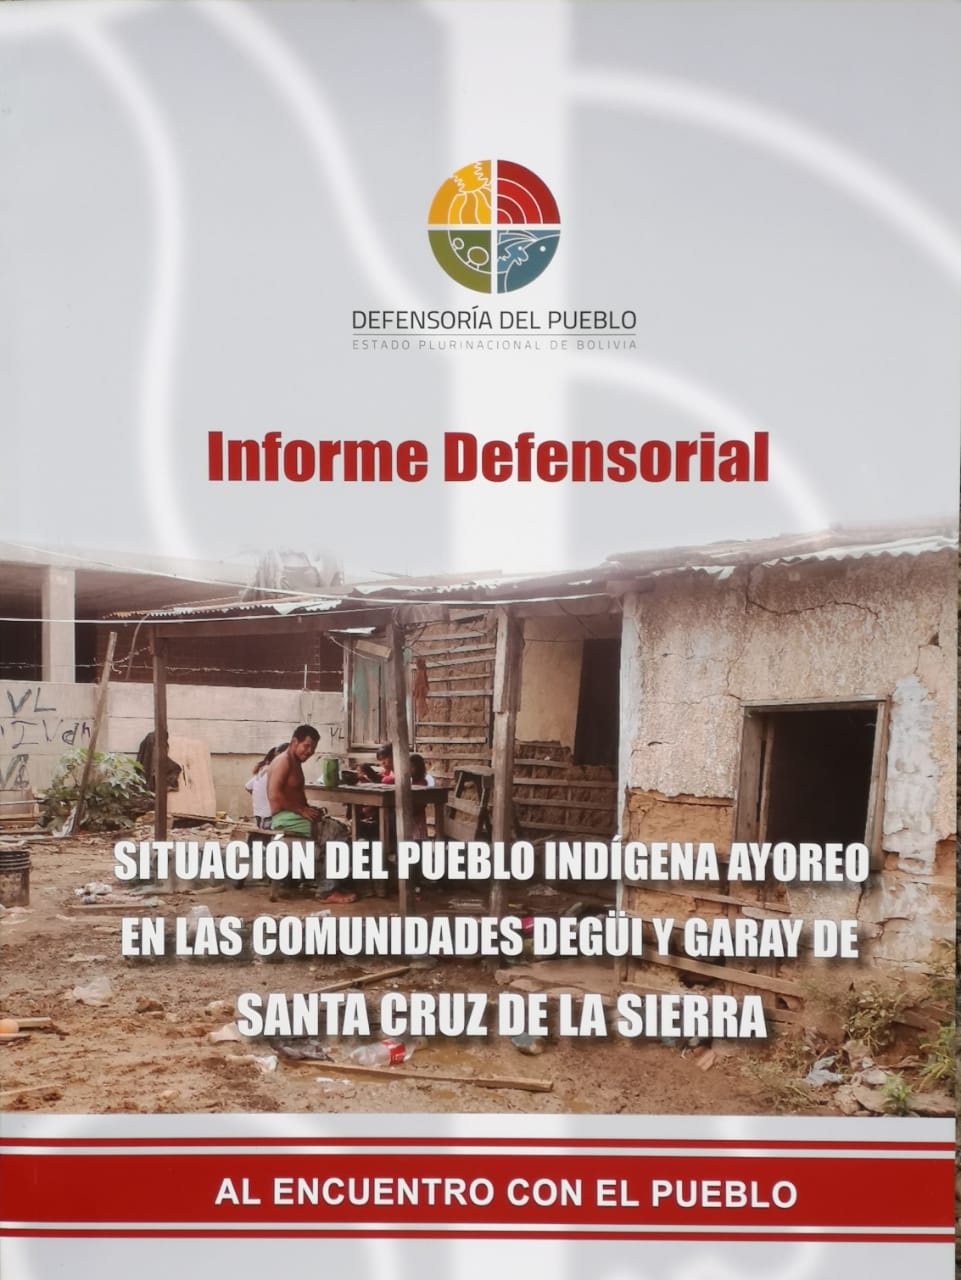 Informe Defensorial muestra la situación de marginación, exclusión y discriminación que afecta al pueblo ayoreo en Santa Cruz